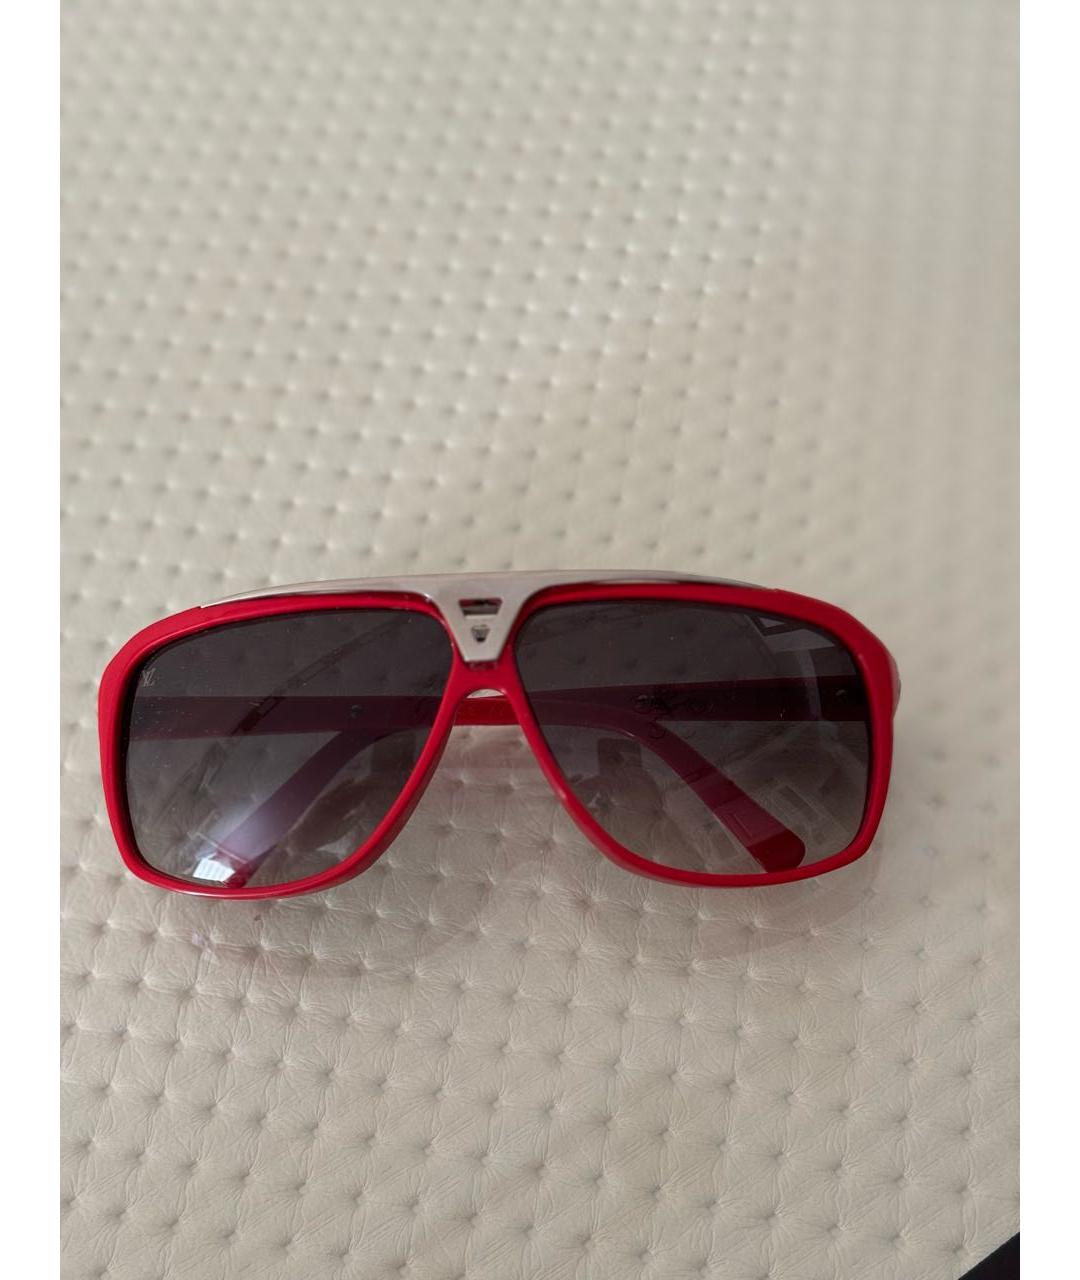 LOUIS VUITTON PRE-OWNED Красные пластиковые солнцезащитные очки, фото 4